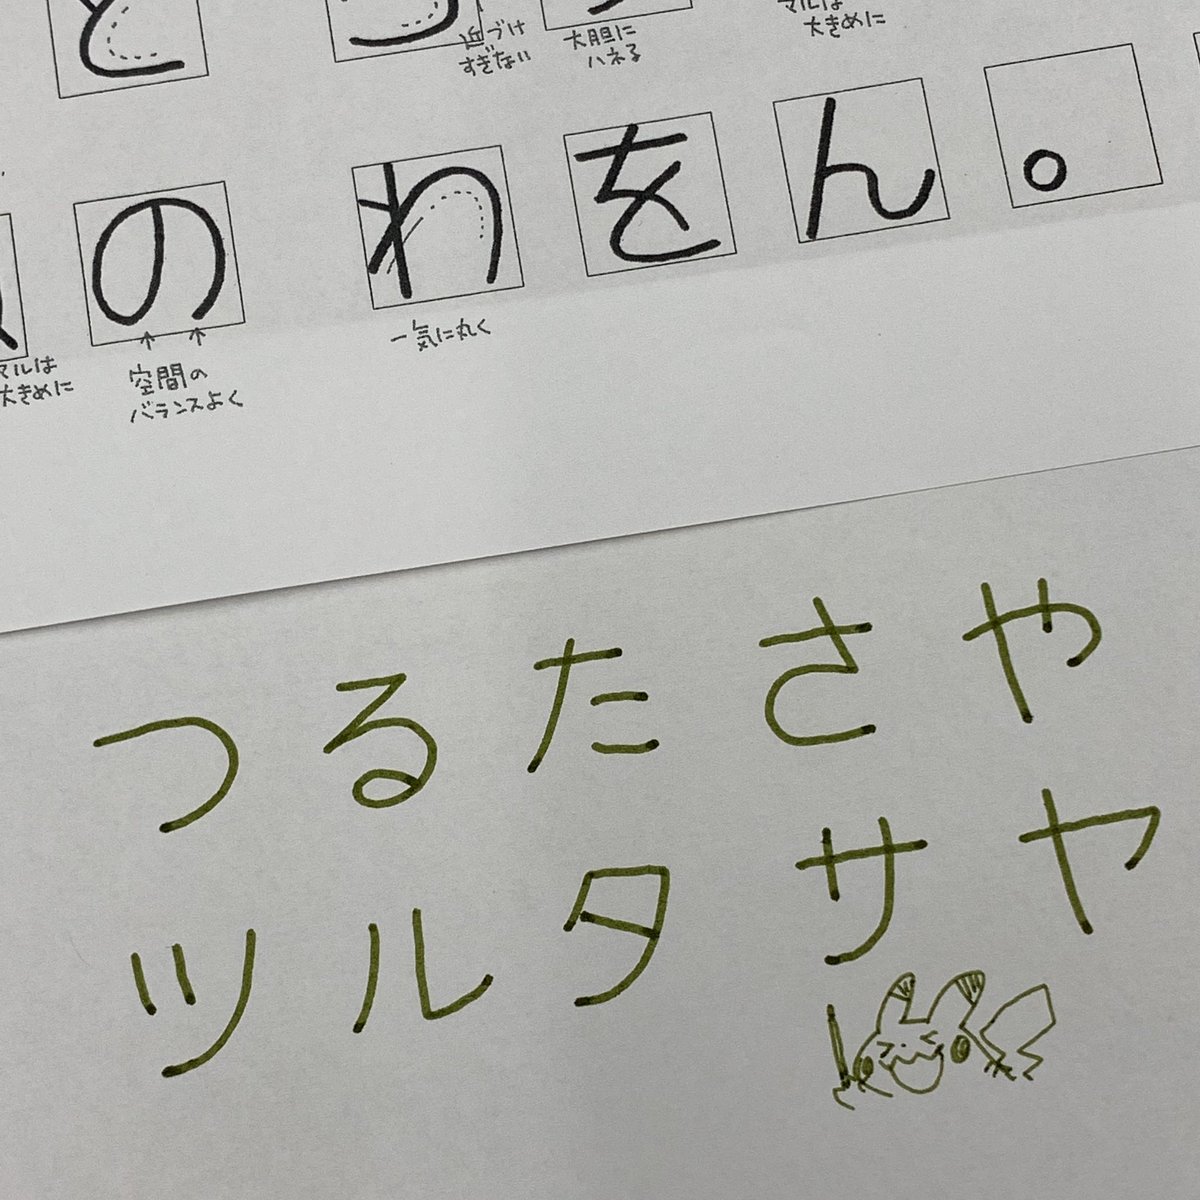 桑沢デザイン研究所にて 森井ユカ先生 @yukayuka 「伝わるイラストと読みやすい文字」講座を受講しました。学校で様々な人と共に興味のあることを学ぶってこと自体が本当に久々でとても新鮮で楽しかったです!! 